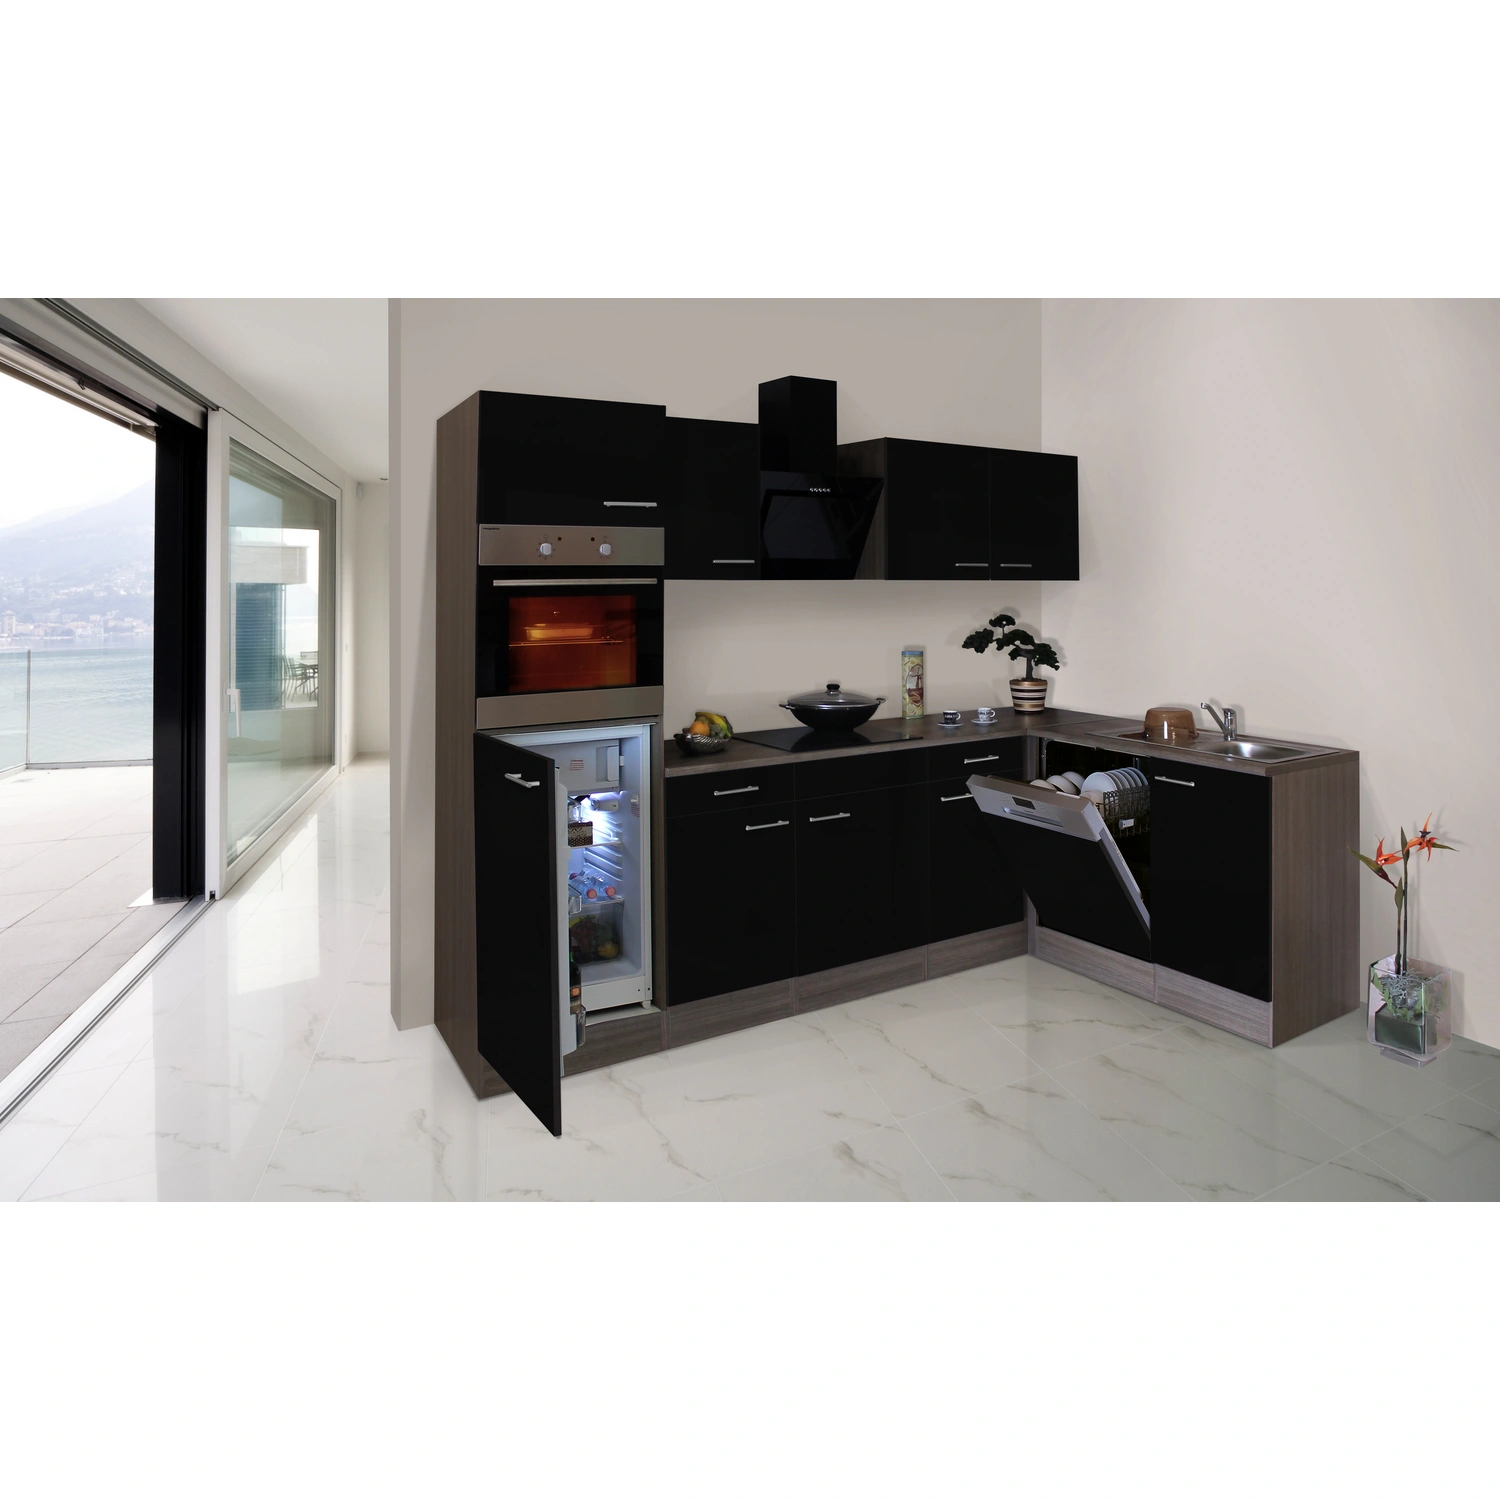 RESPEKTA Küchenzeile »KBL280EYGS«, mit E-Geräten, Gesamtbreite: 280 cm